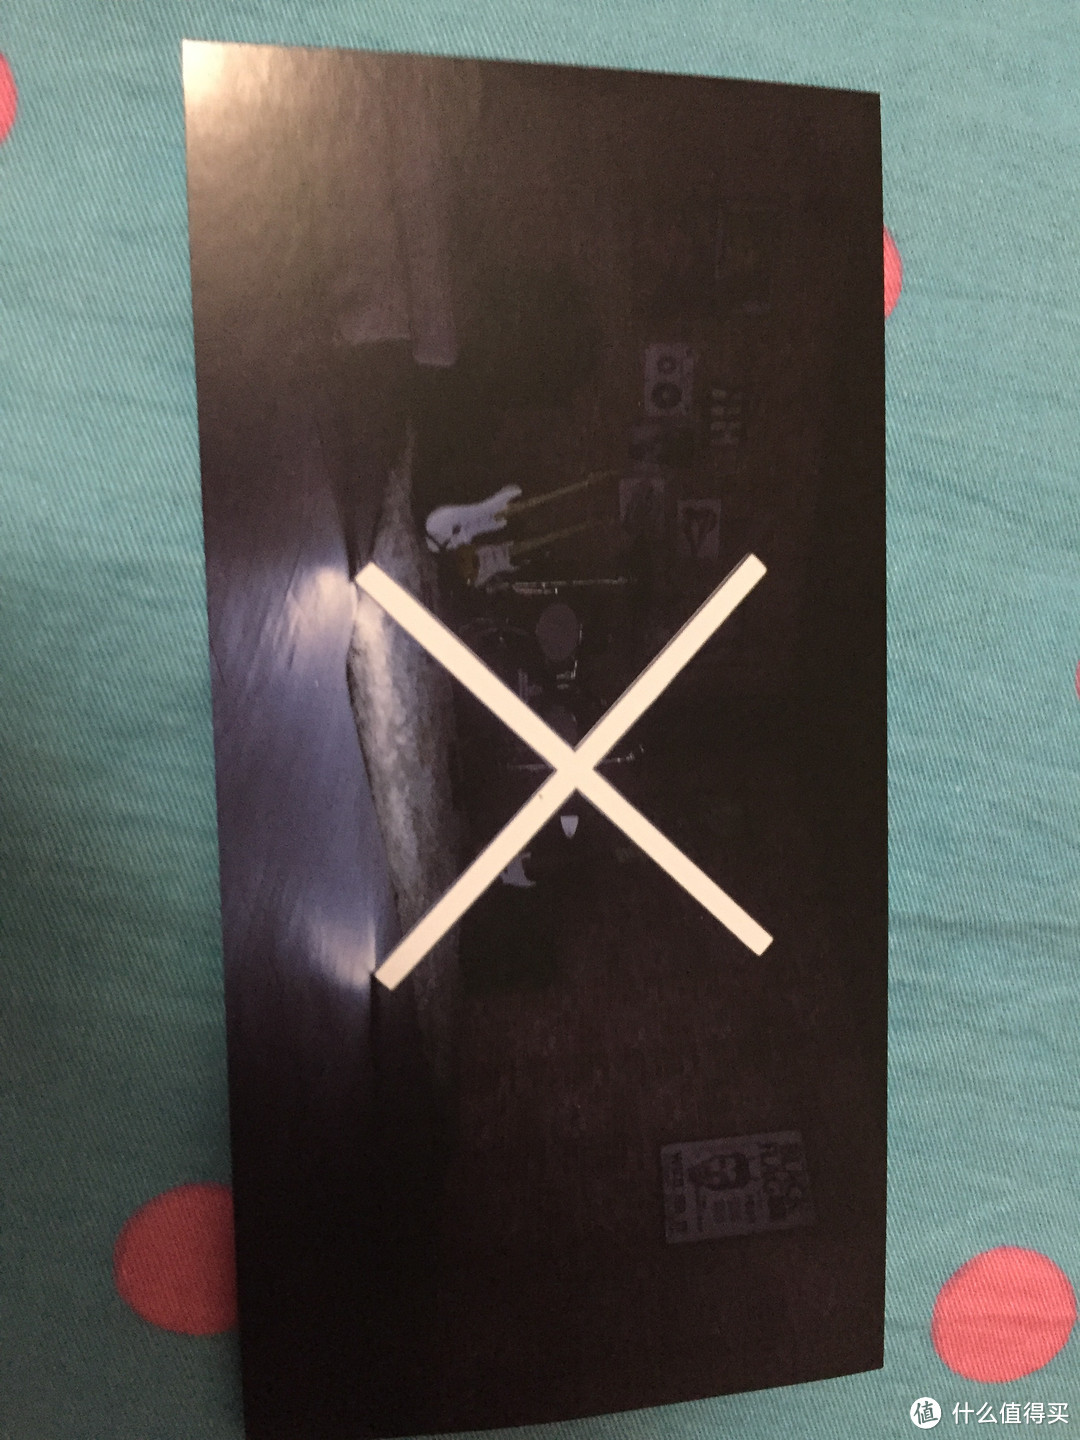 就这么玩美：OnePlus 一加 X 3G+16G皓月白双网通 开箱&简评